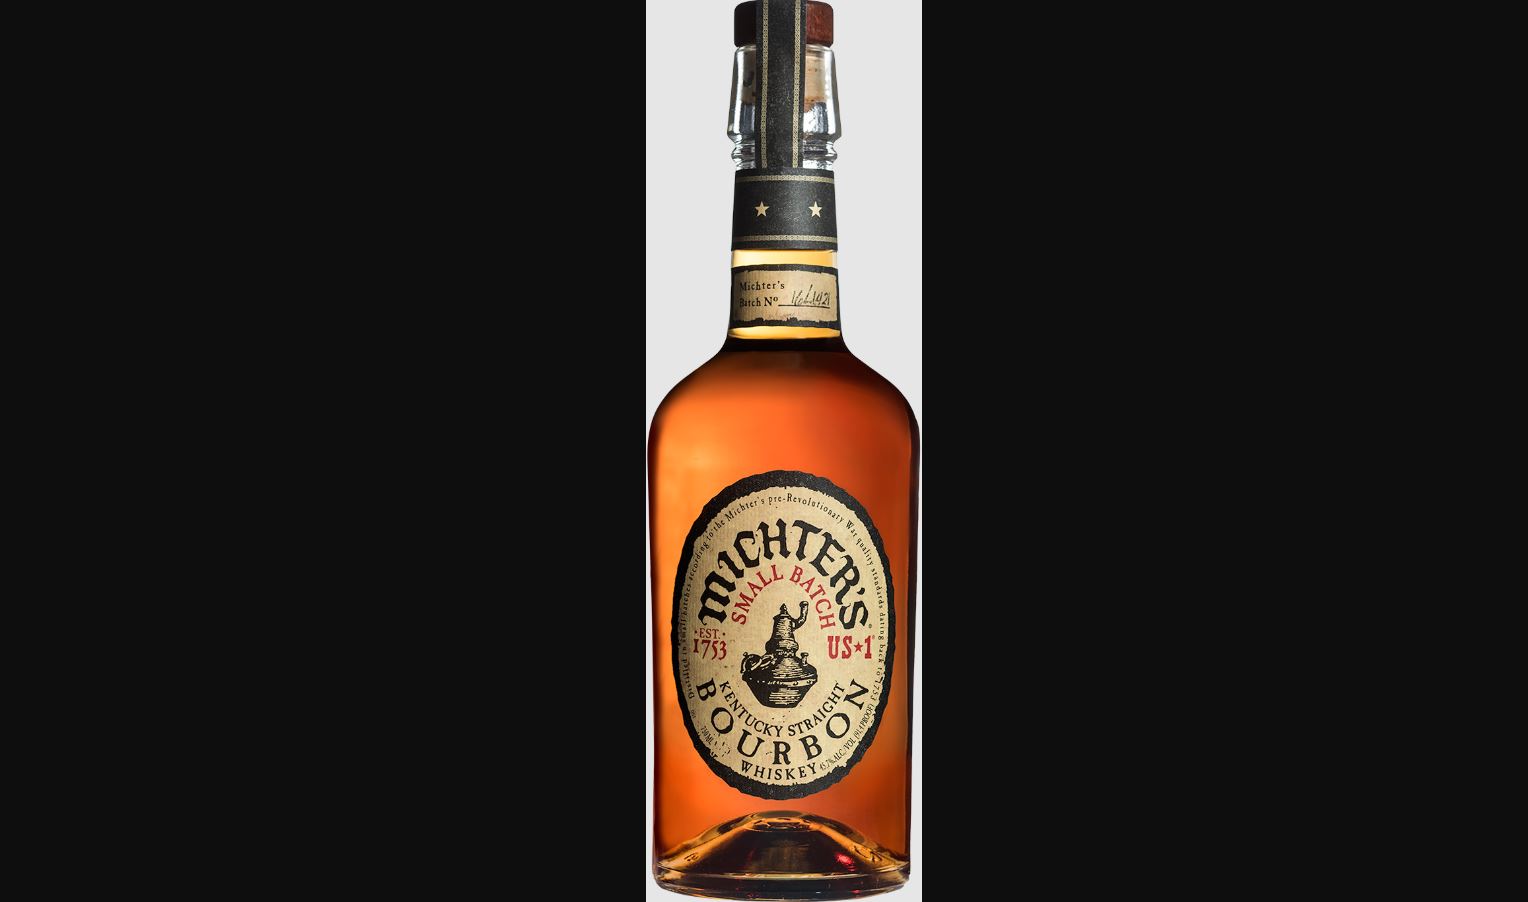 Michter’s US-1 Kentucky Straight Bourbon